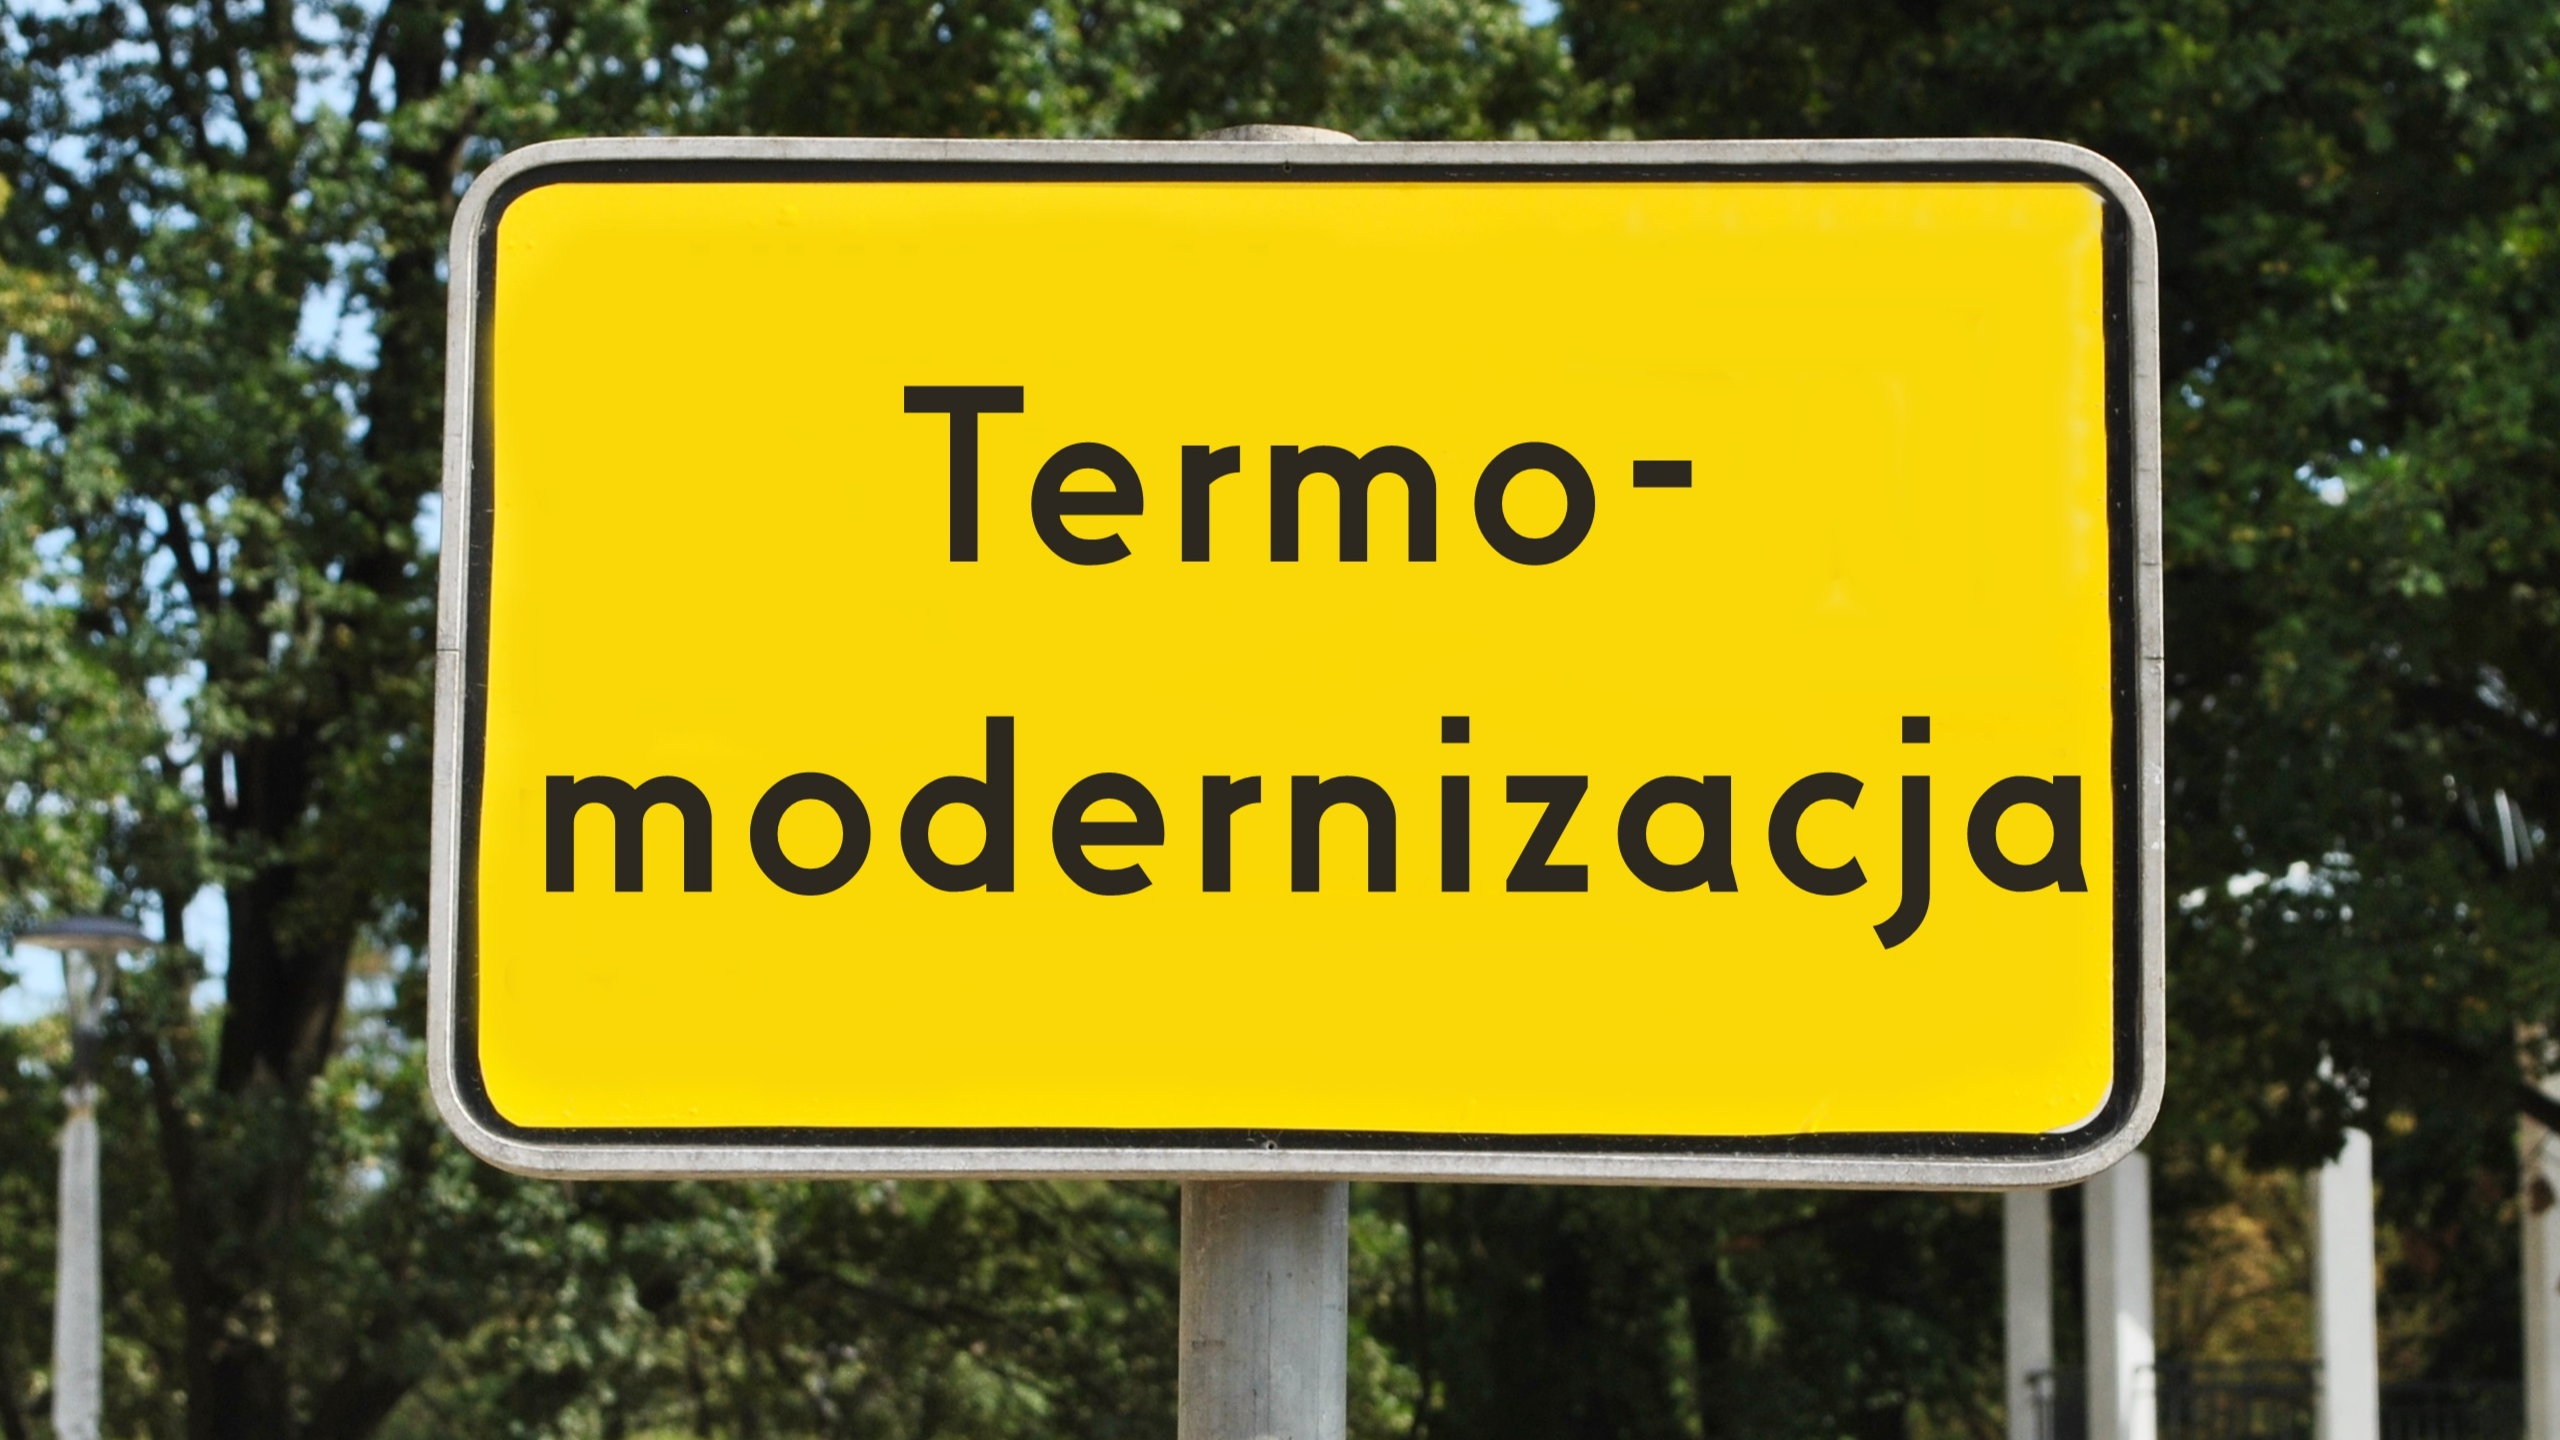 Żółty znak drogowy na tle lasu z napisem "Termomodernizacja"